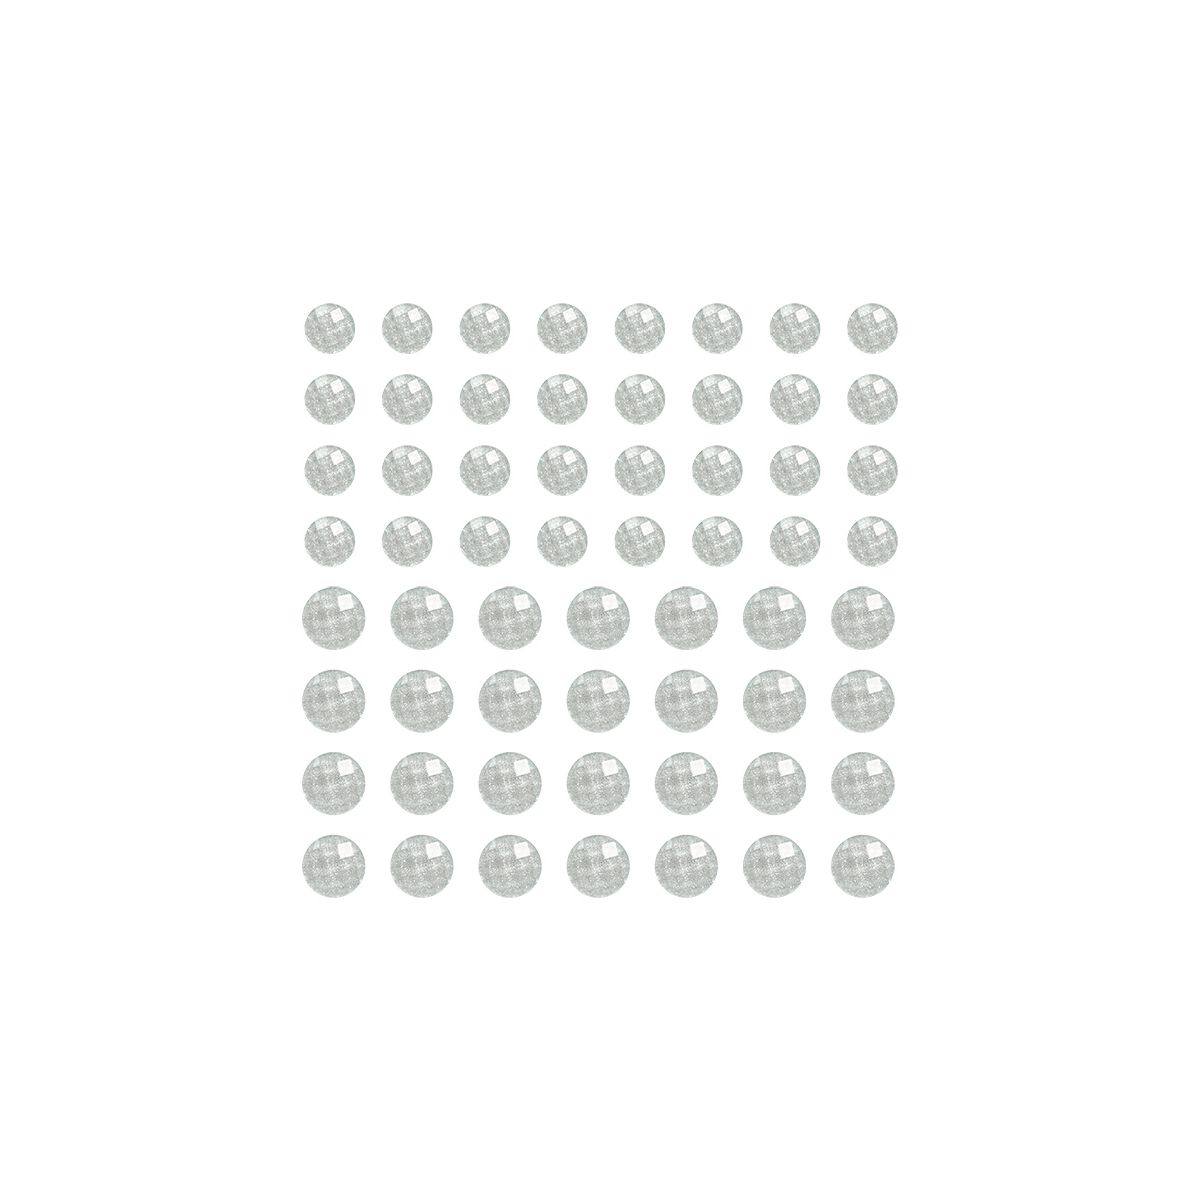 Kryształki Titanum Craft-Fun Series samoprzylepne 50 szt białe (DIY1801A)